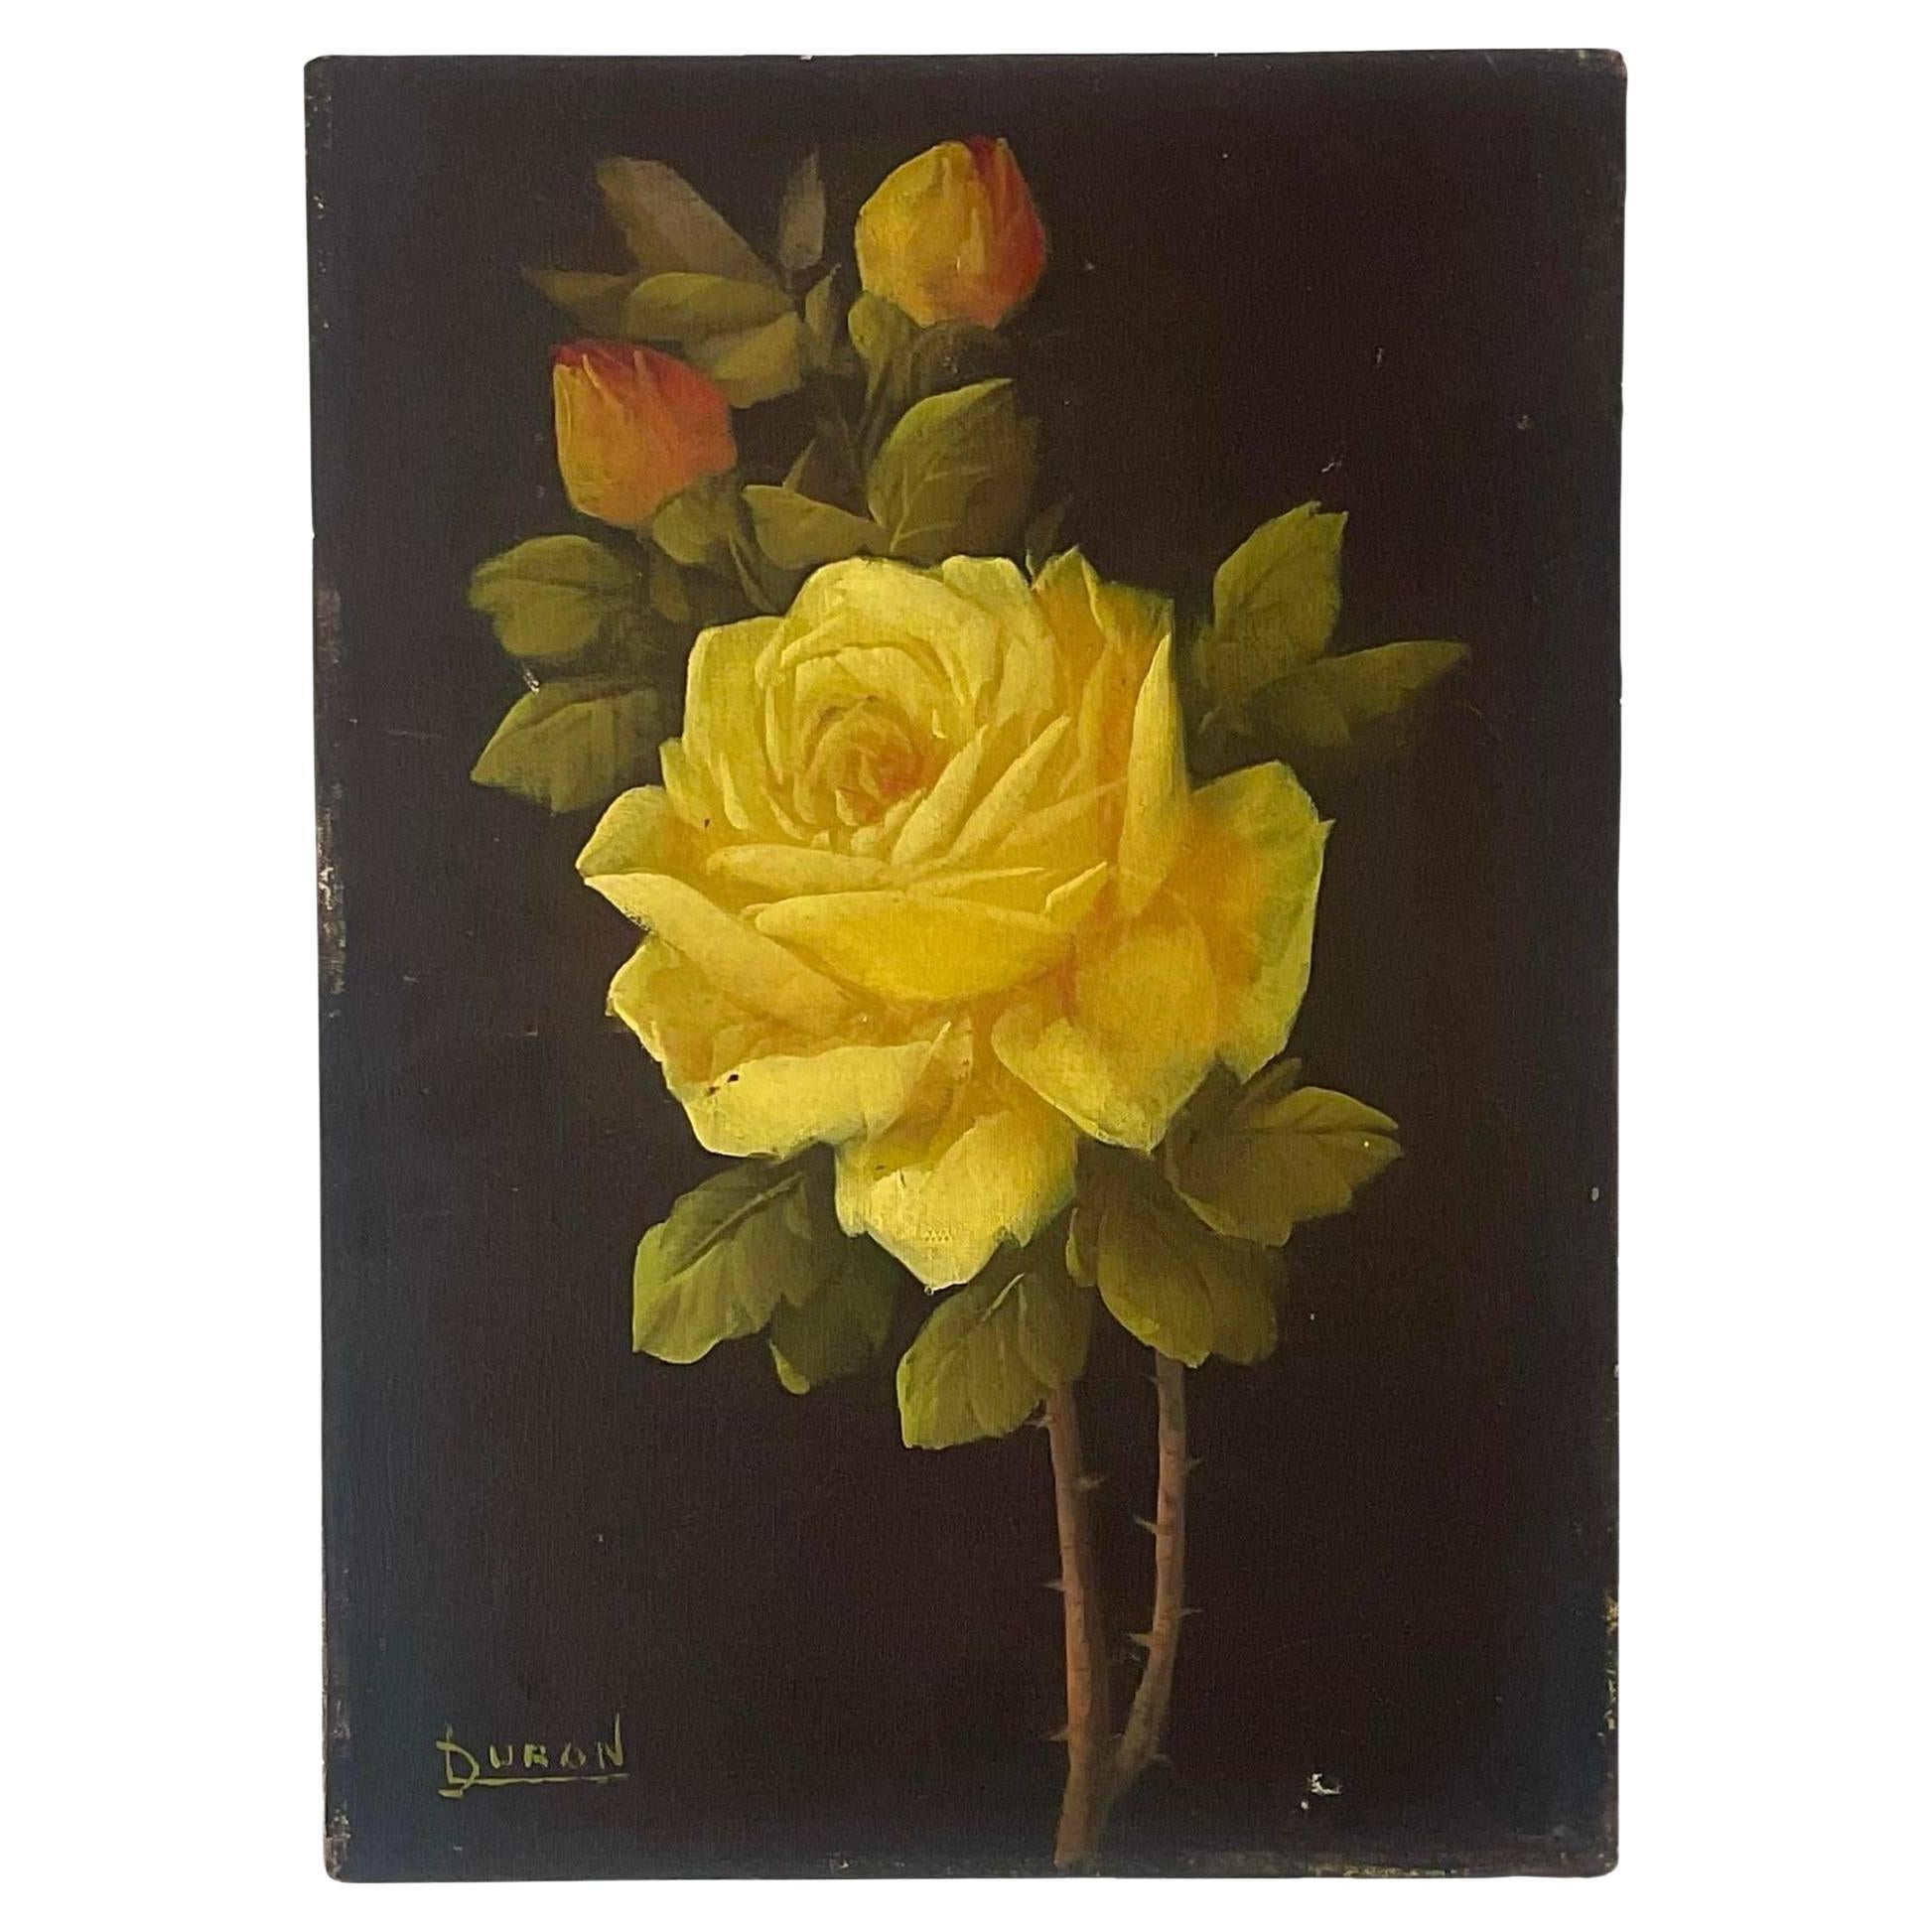 Vintage Boho Signed Original Oil on Canvas of Rose